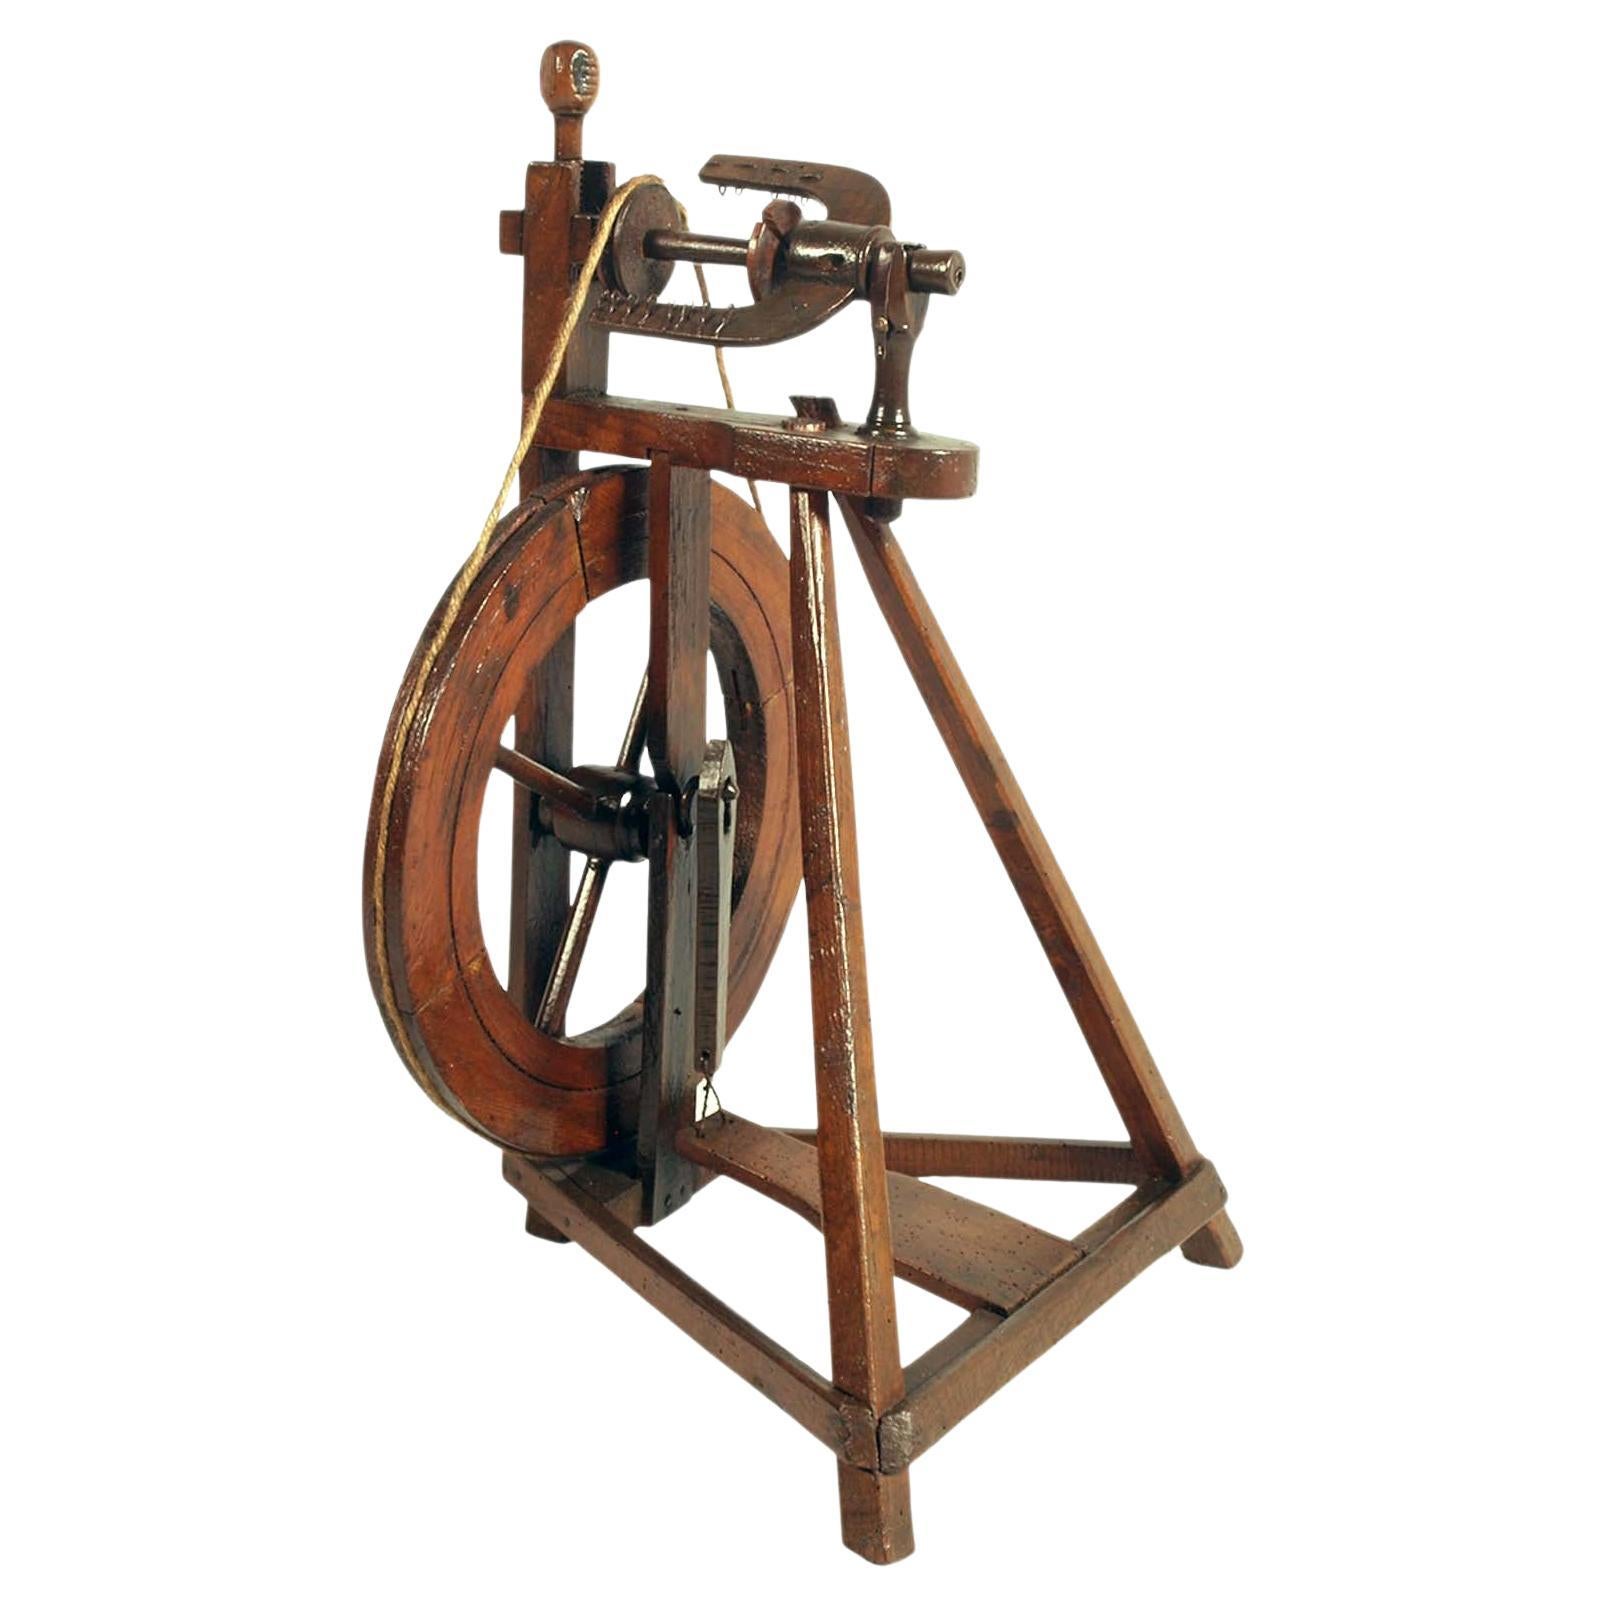 Tyrorianisches Spinningrad aus Nussbaumholz aus dem 18. Jahrhundert, noch immer funktionstüchtig